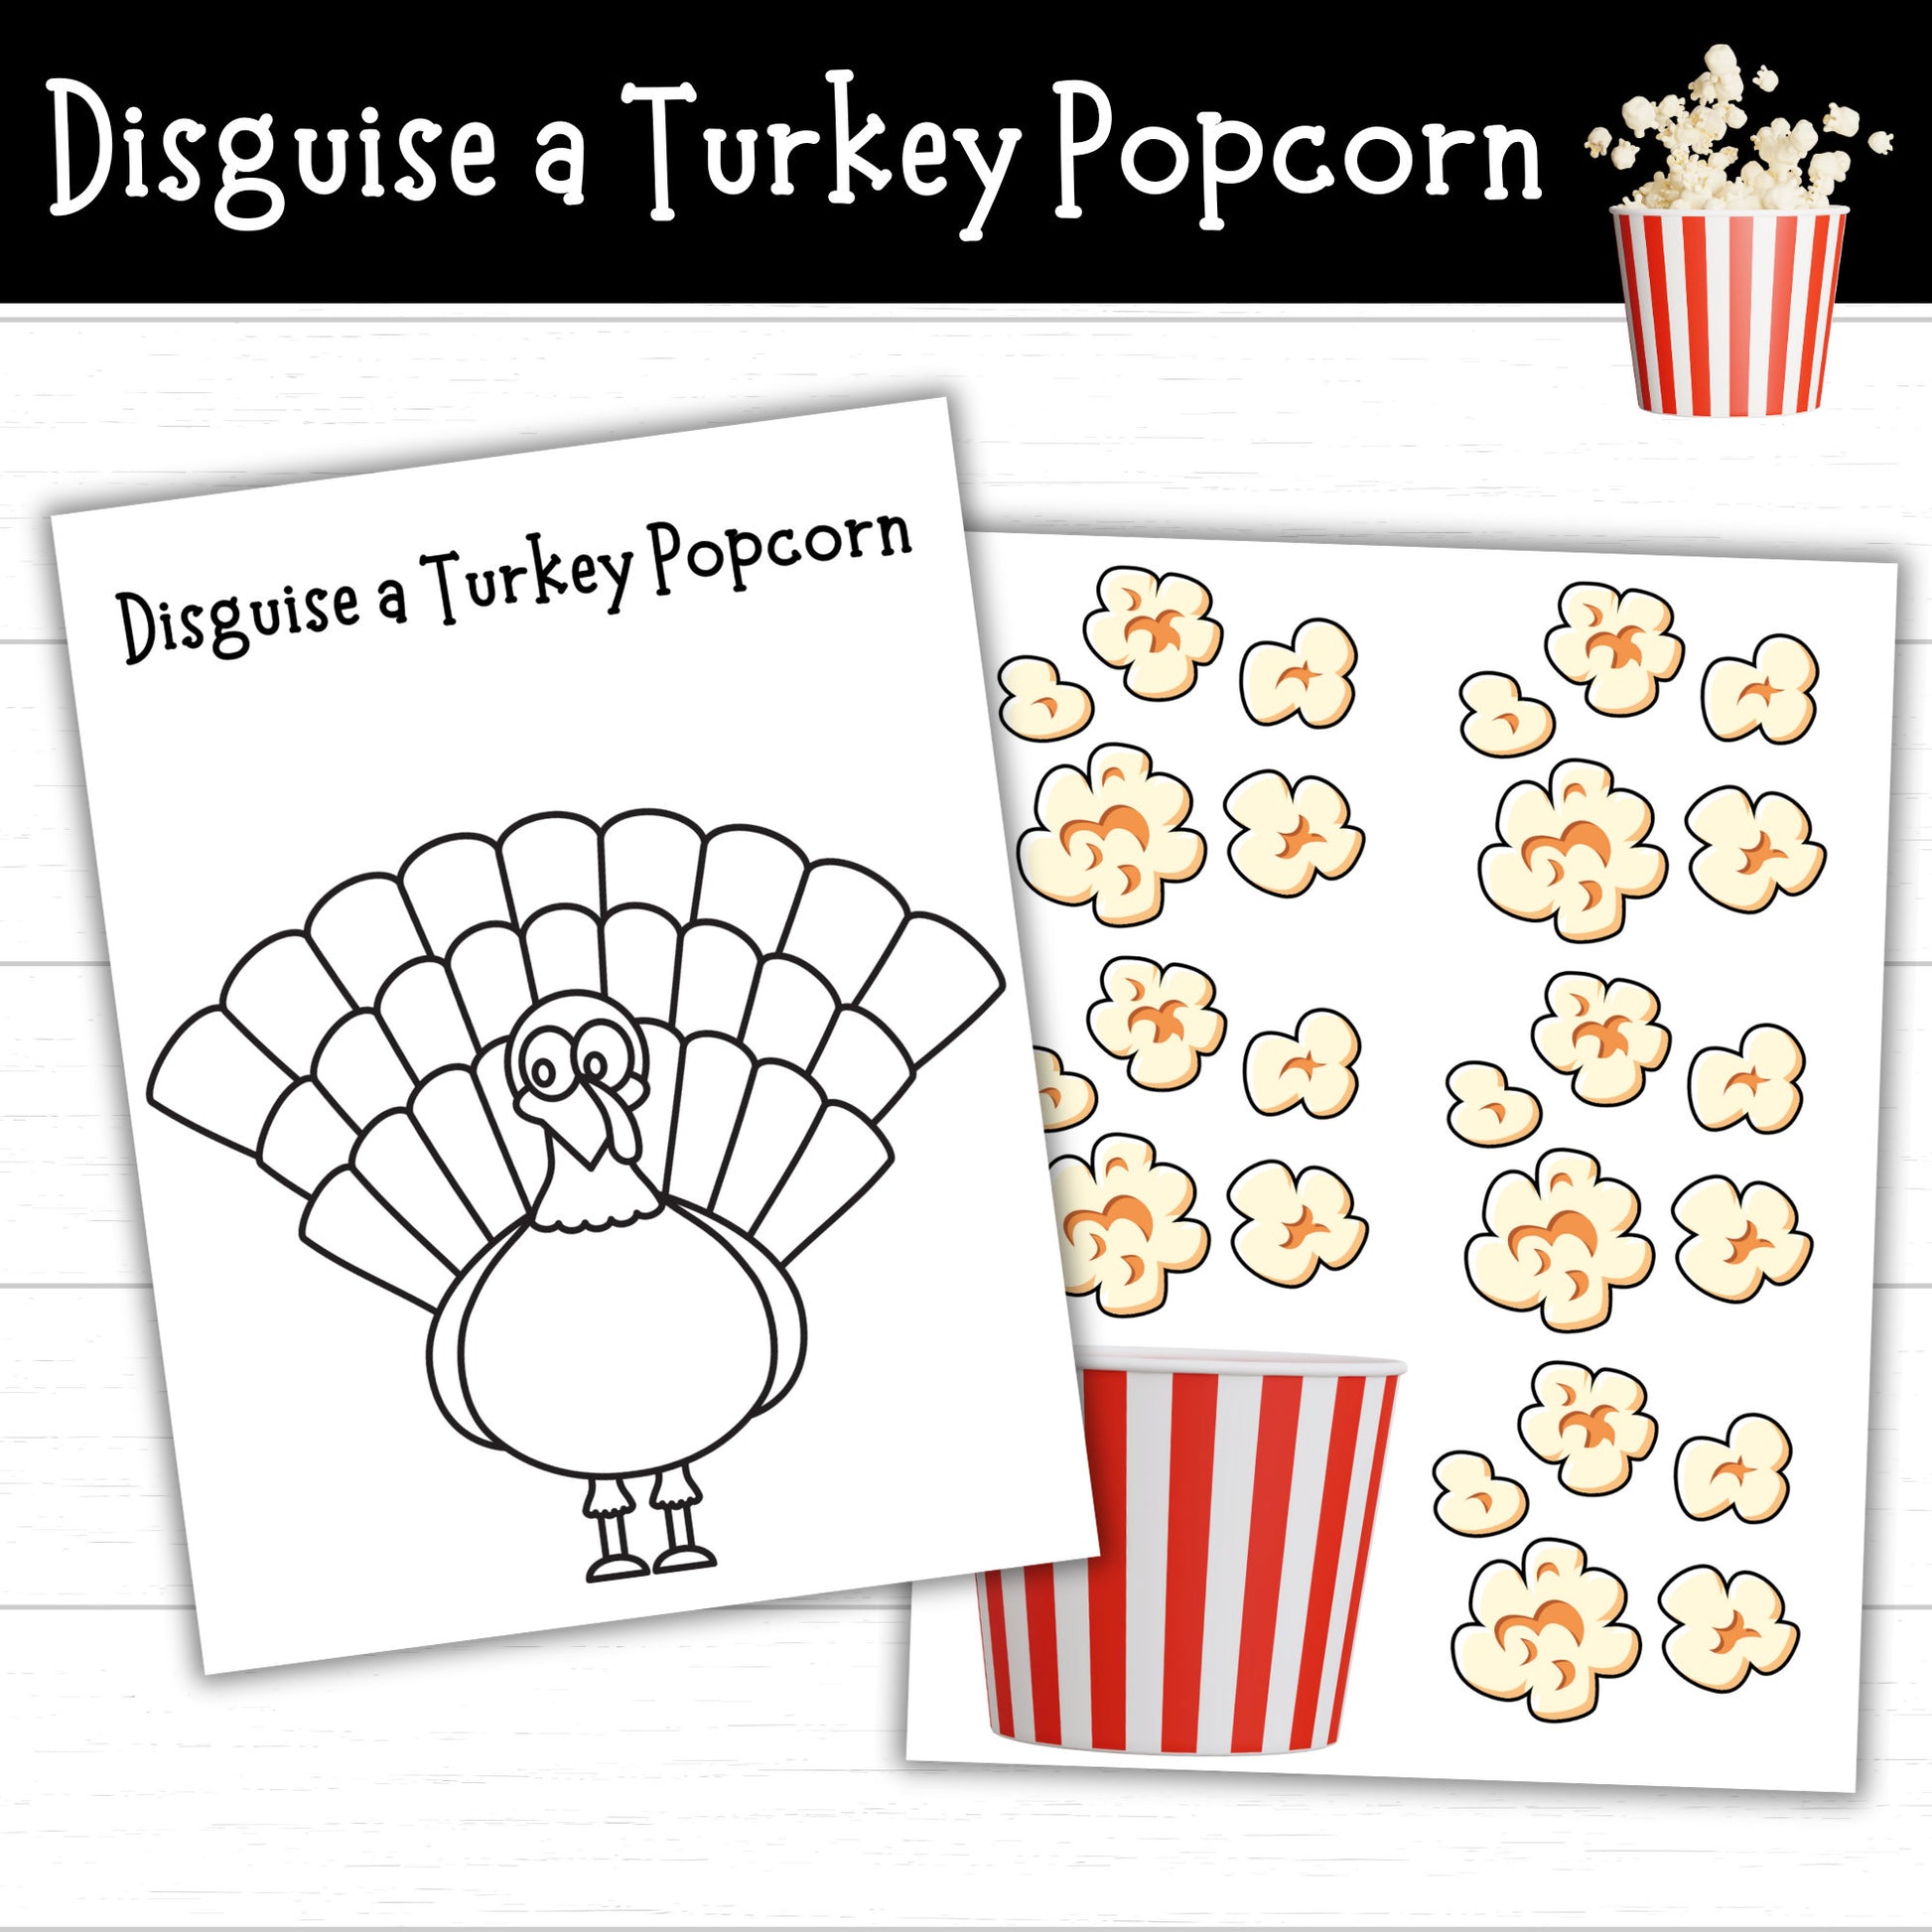 Disguise a Turkey Popcorn, Turkey in Disguise Popcorn, Popcorn Turkey, Turkey Popcorn Disguise, Turkey Activity, Disguise a Turkey Project